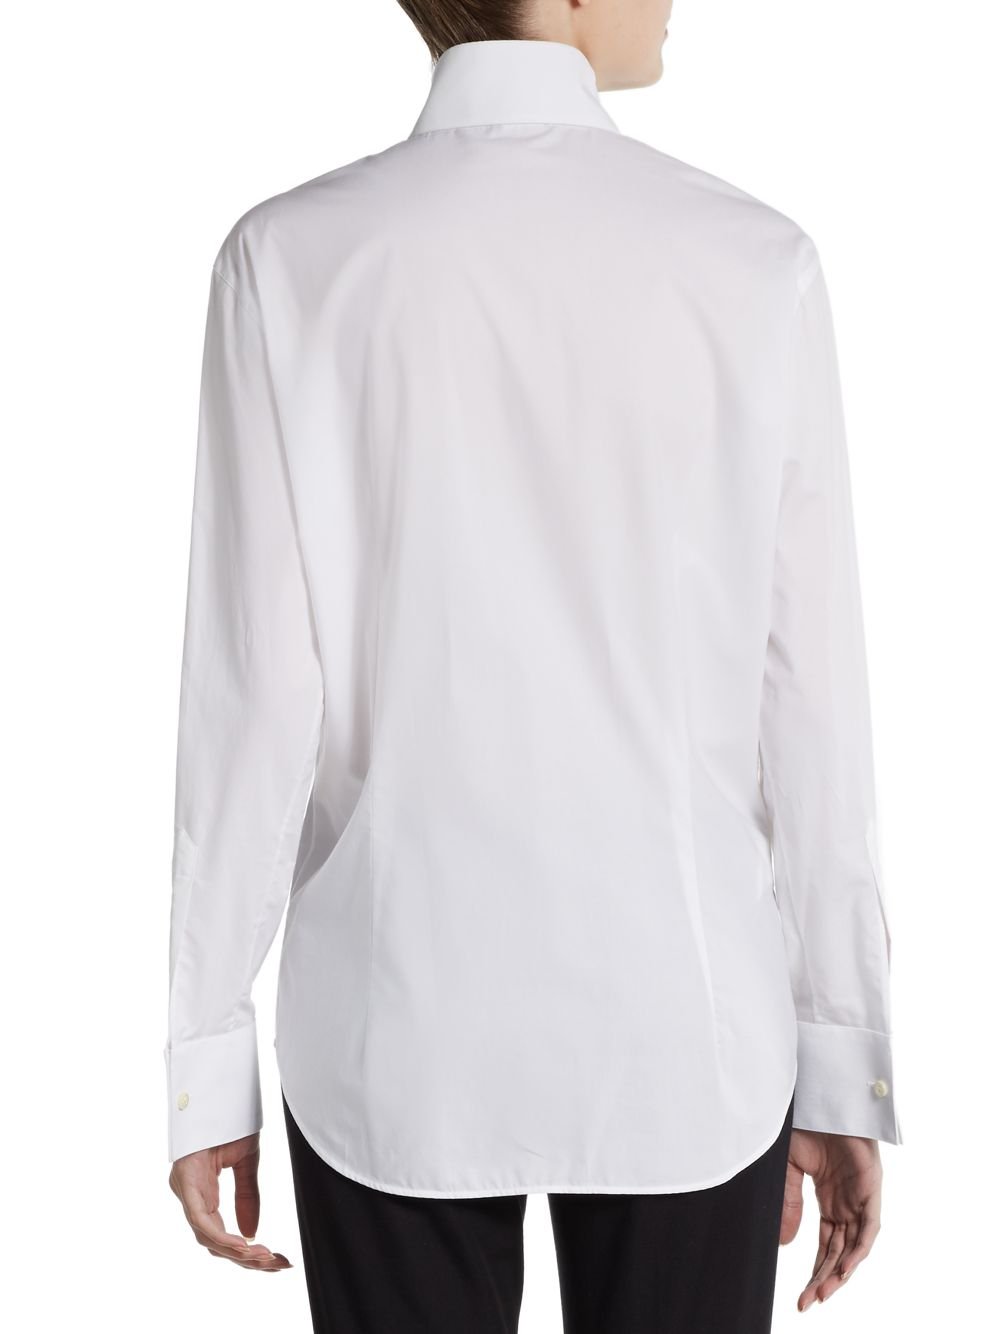 Lyst - Giorgio Armani Wing Collar Cotton Tuxedo Shirt in White